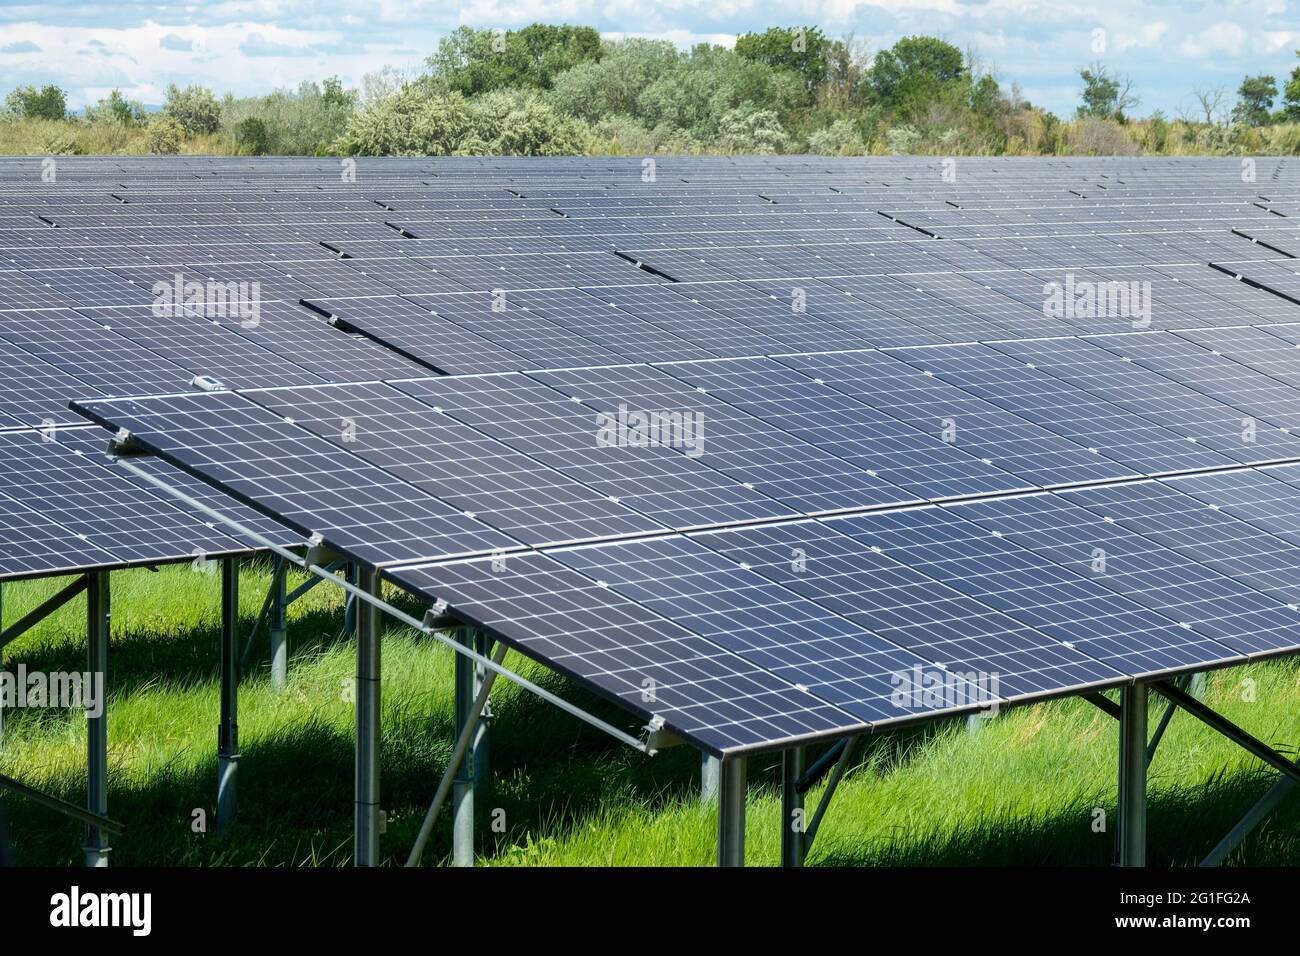 Granja de células solares, estación de energía de paneles solares, fondo de electricidad ecológica y renovable Foto de stock